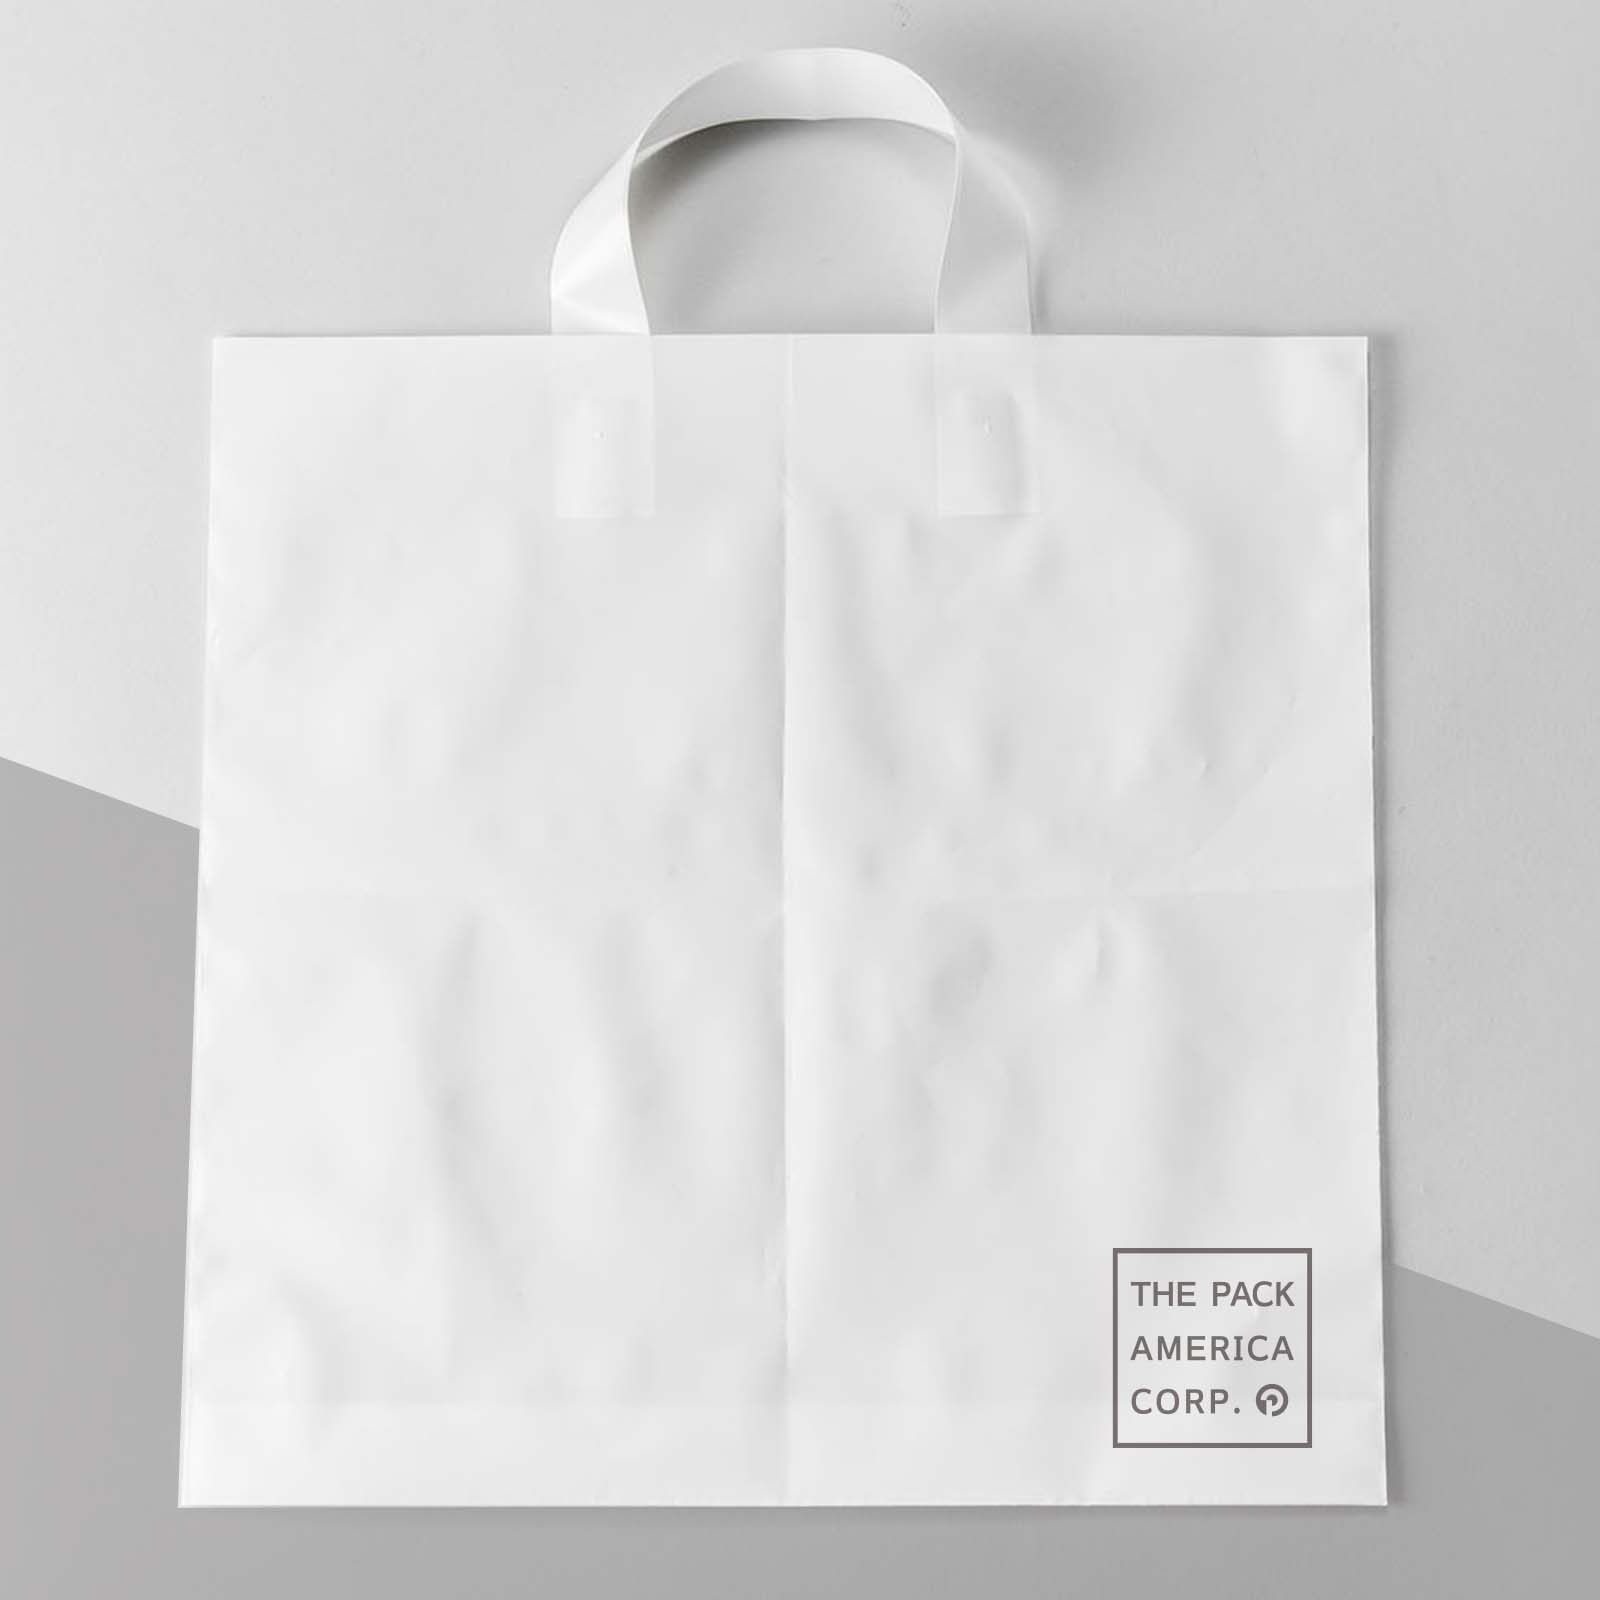 Soft Loop Handle Take-Out Food Bags